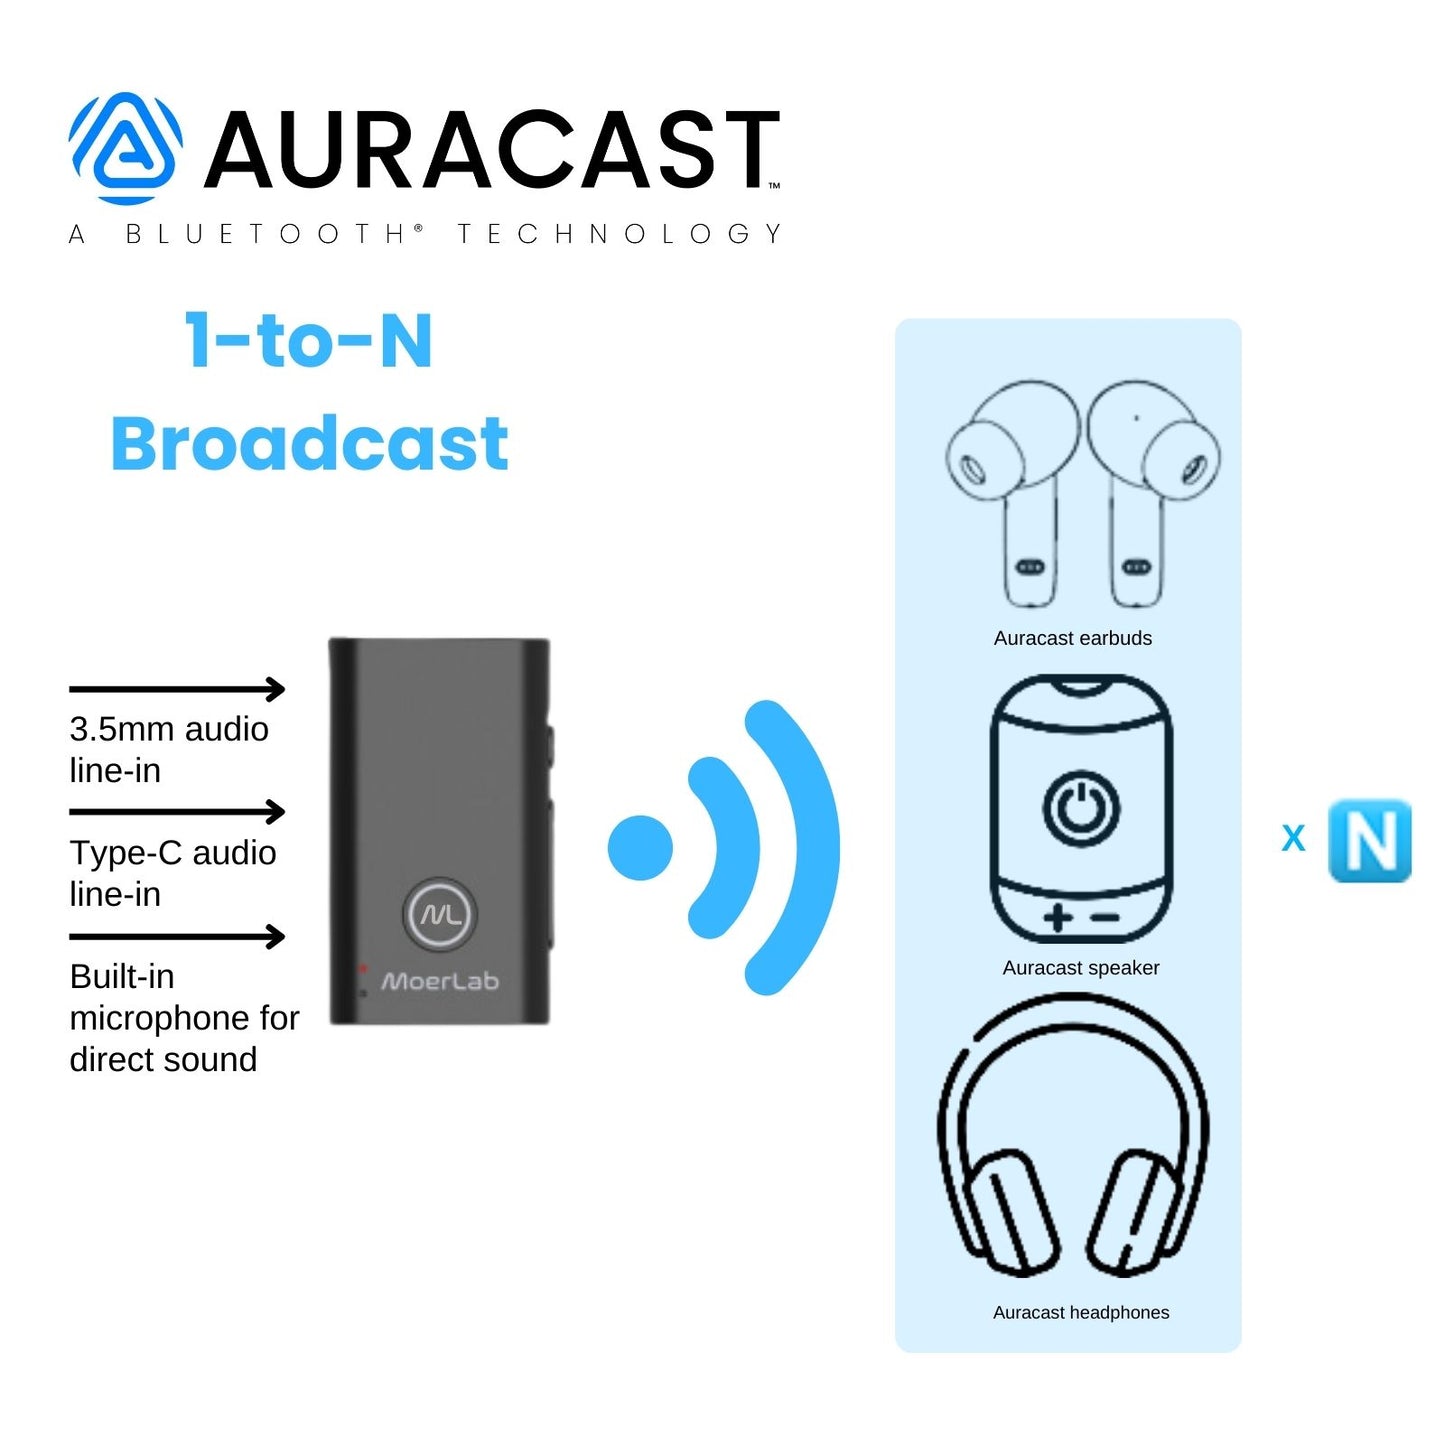 MoerDuo™ Bluetooth 5.3 Auracast Audio Transceiver